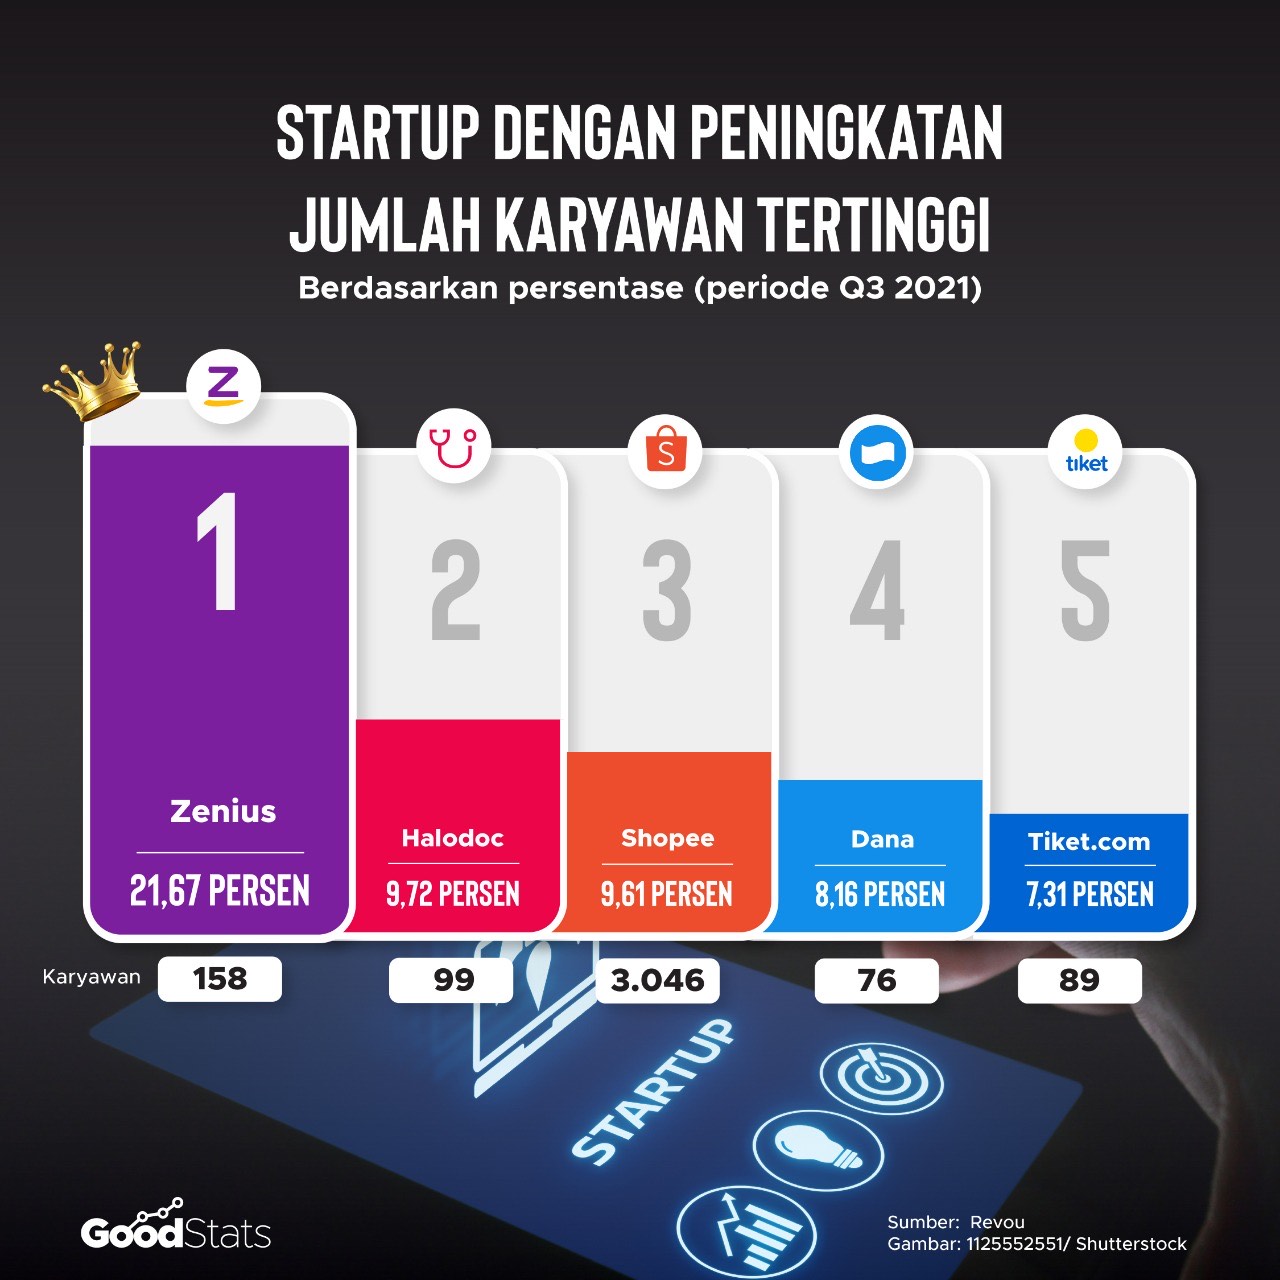 Startuo dengan peningkatan jumlah karwayan tertinggi di Indonesia | GoodStats